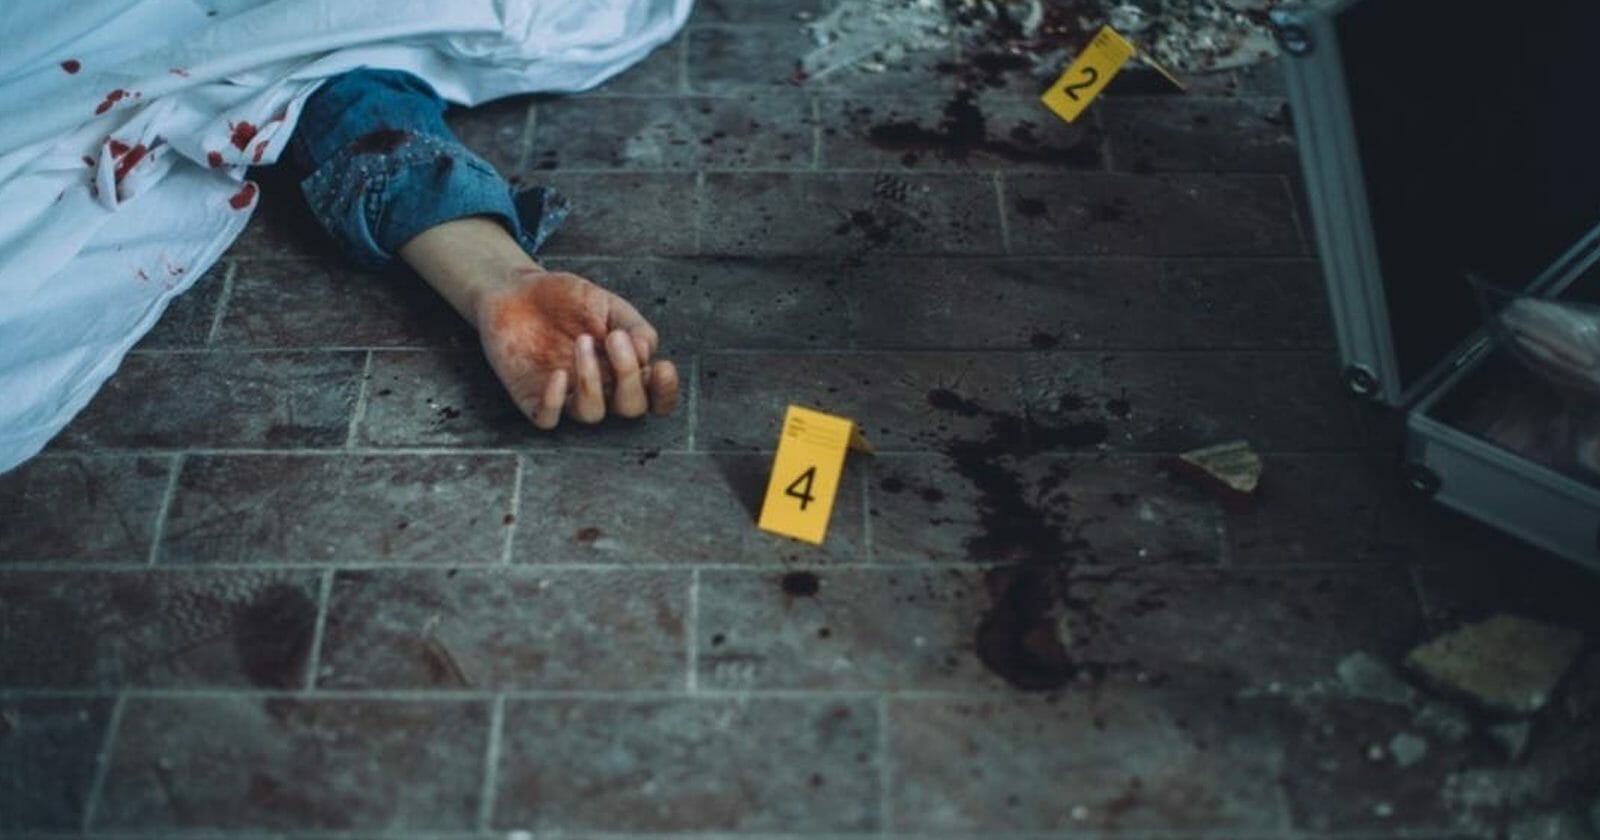 جريمة قتل في أول أيام رمضان في سوريا watanserb.com